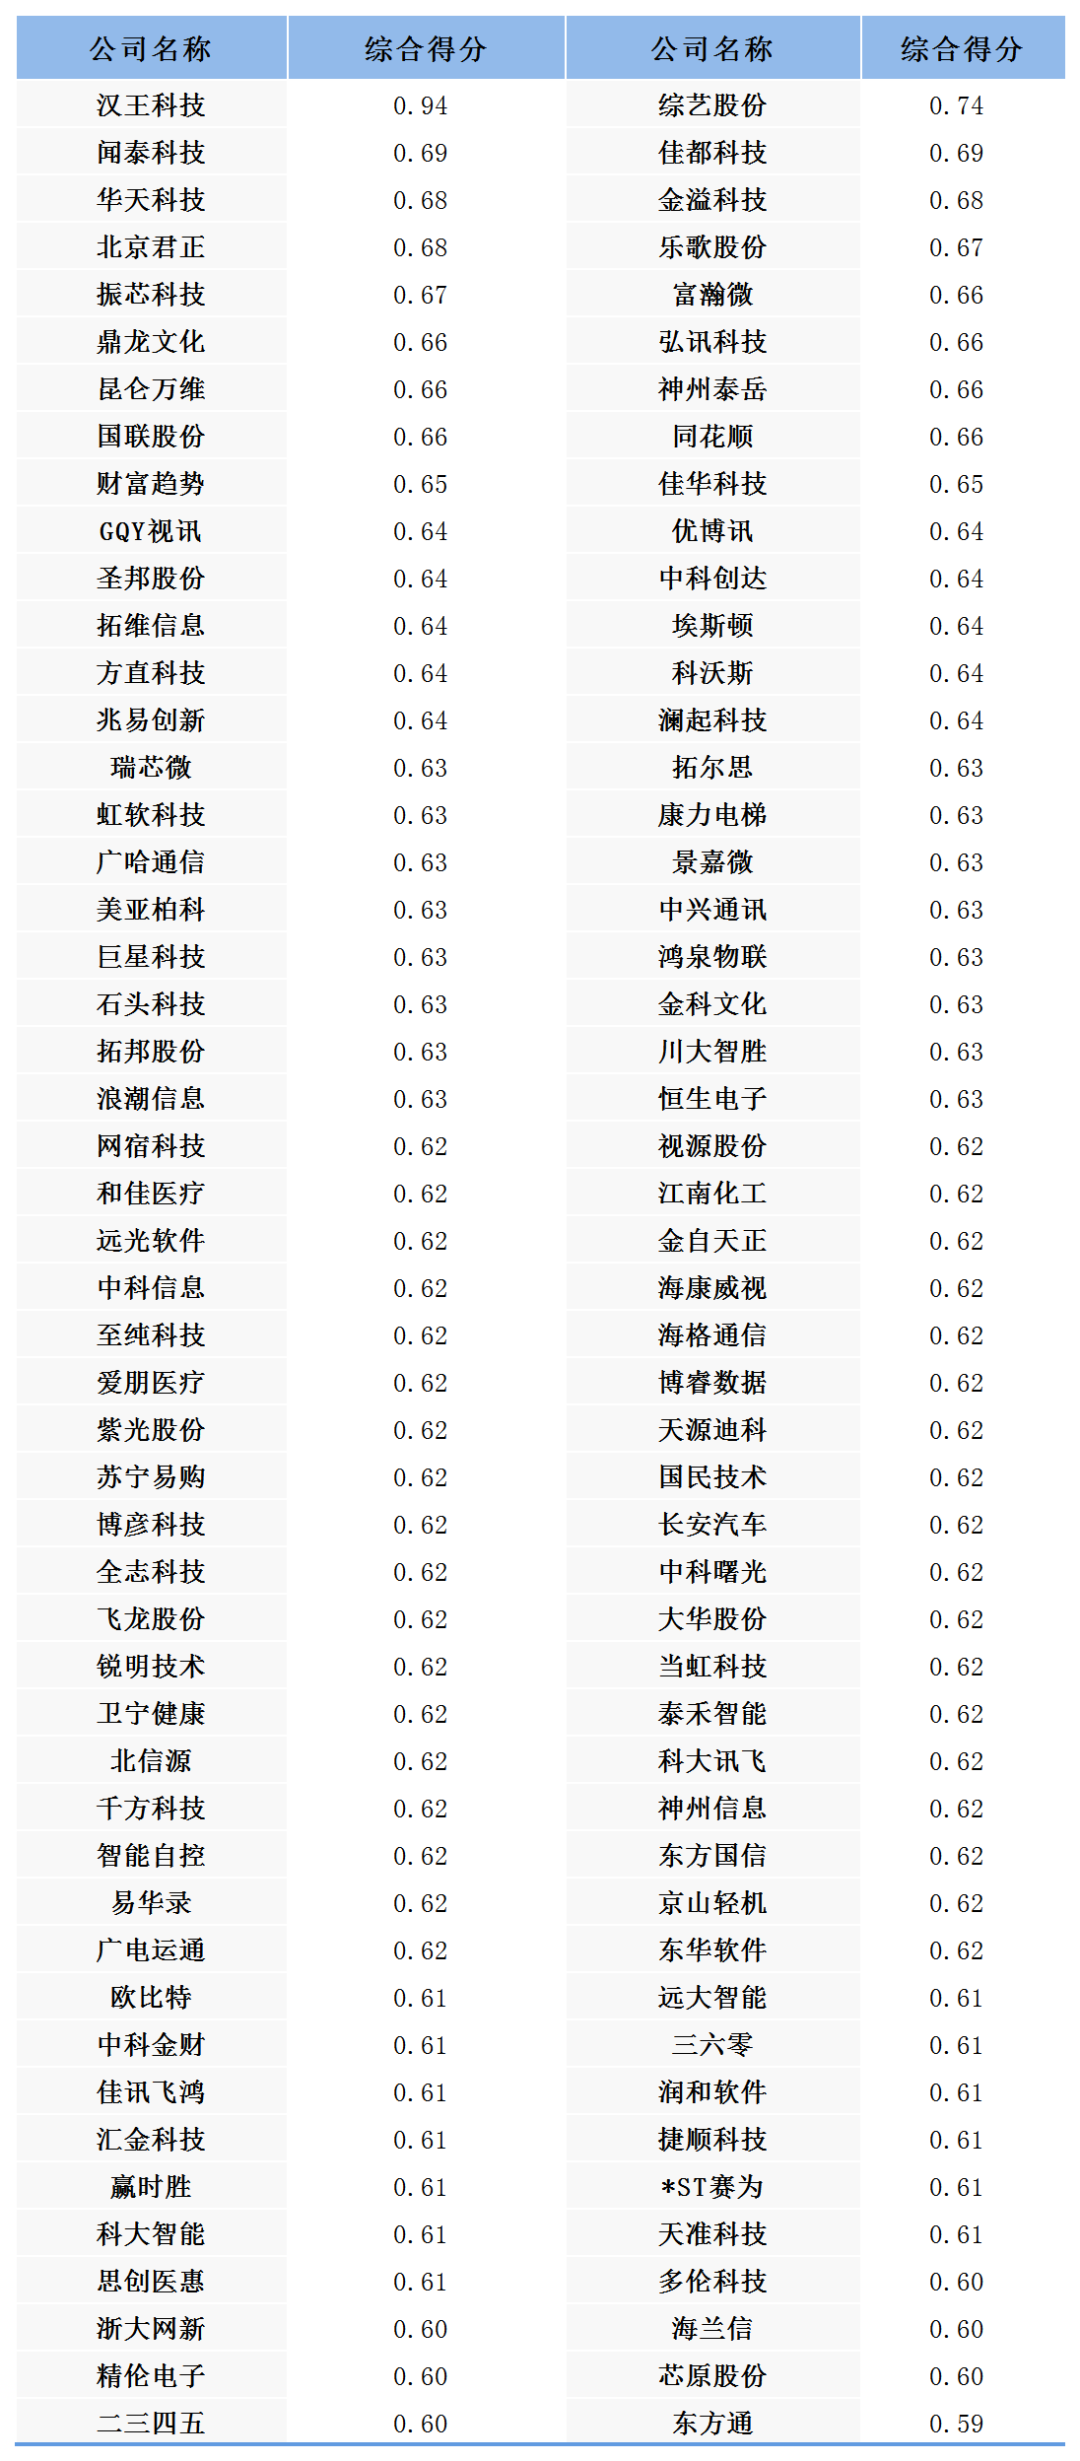 中国产业排行_中国区块链产业头部企业竞争力排名发布腾讯排名居首